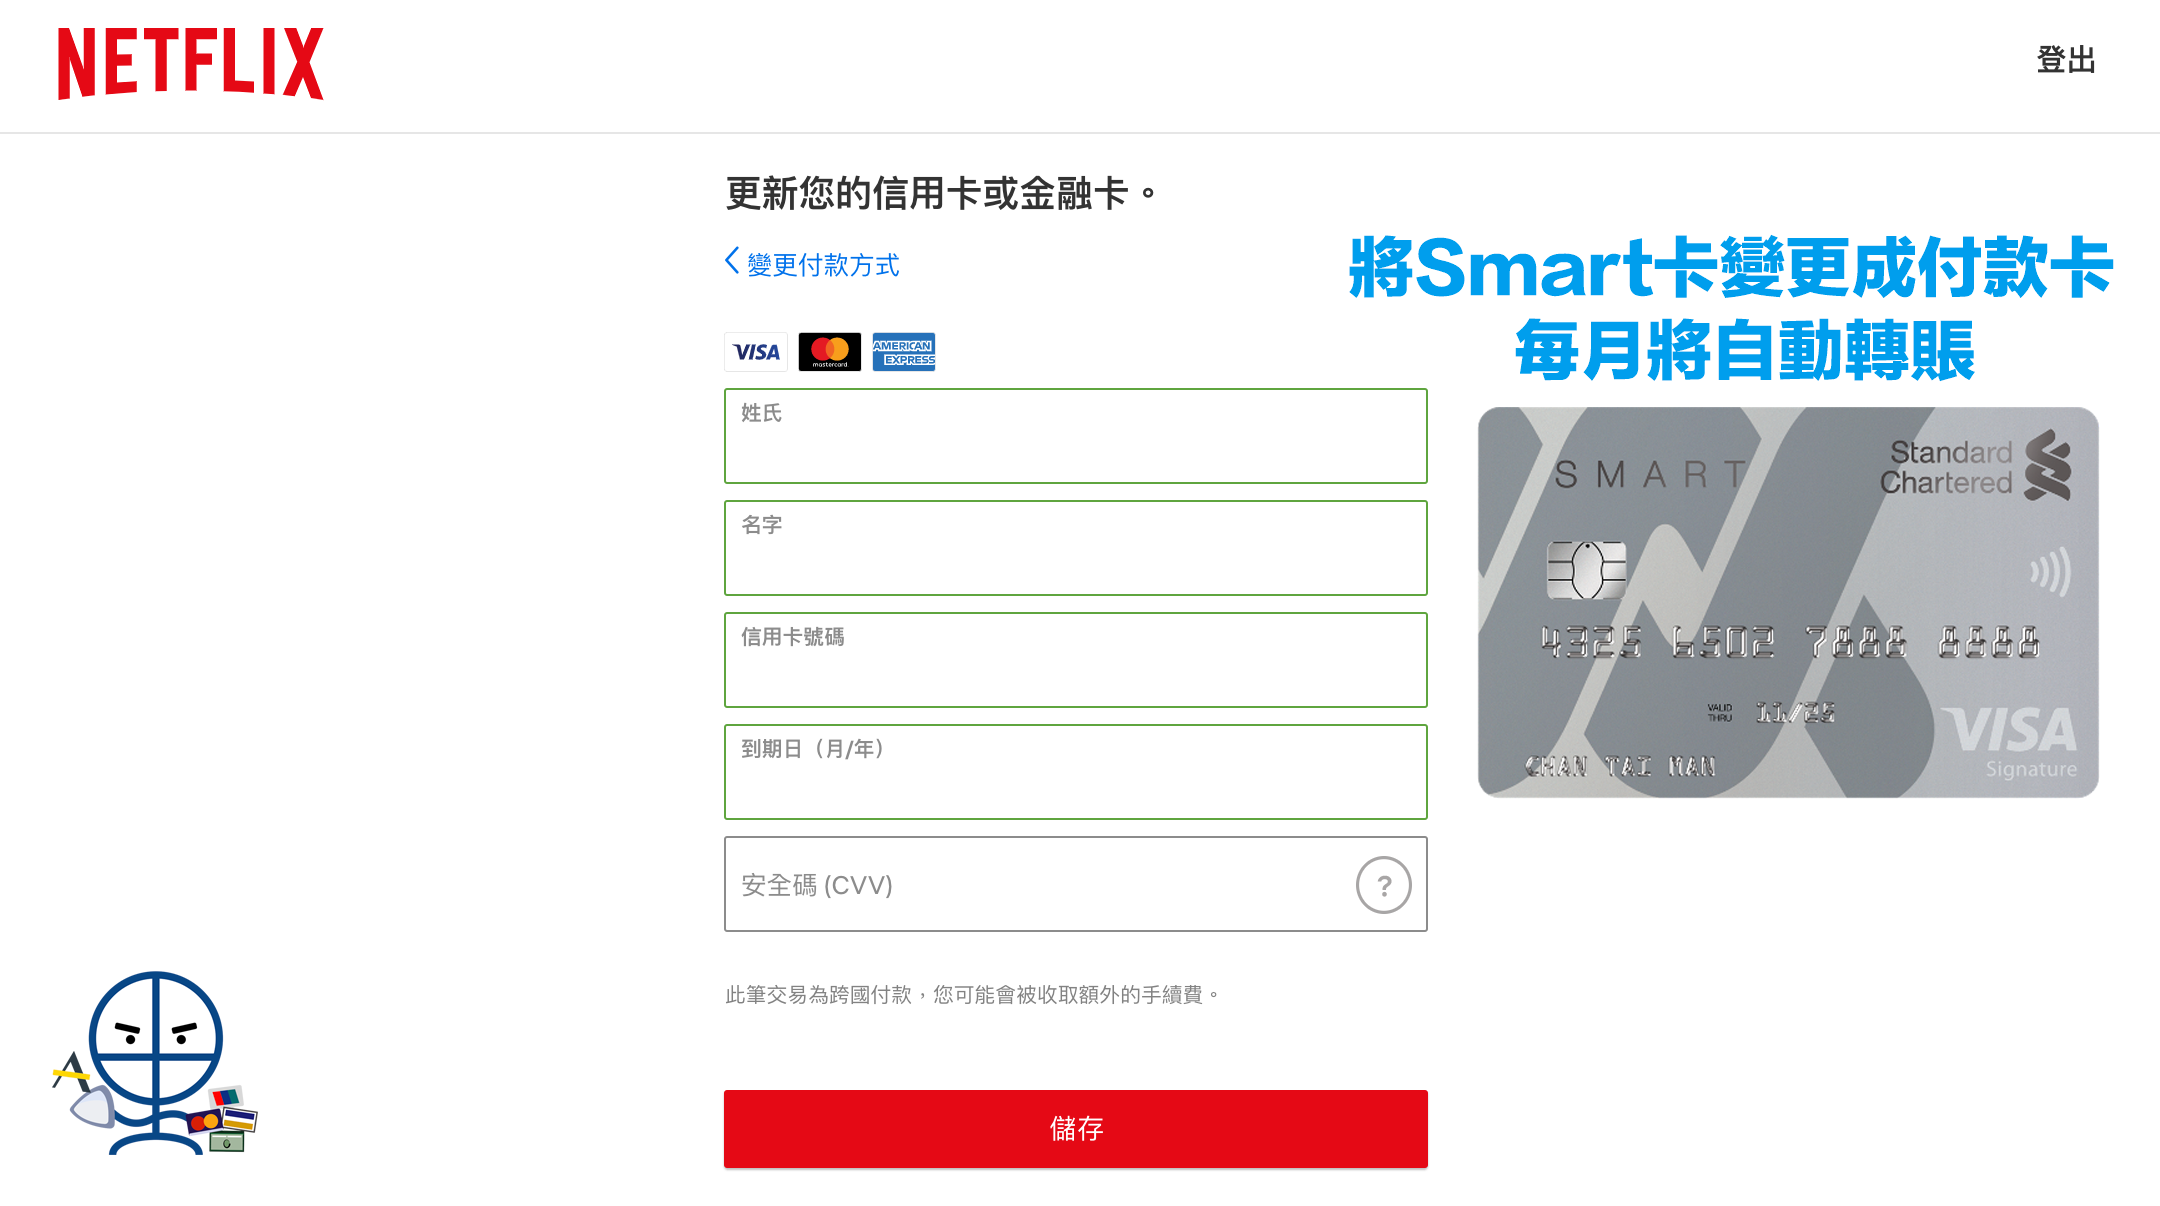 【自動轉賬積分回贈攻略】渣打Smart卡迎新登記及付款一次賺高達HK$500 現金回贈